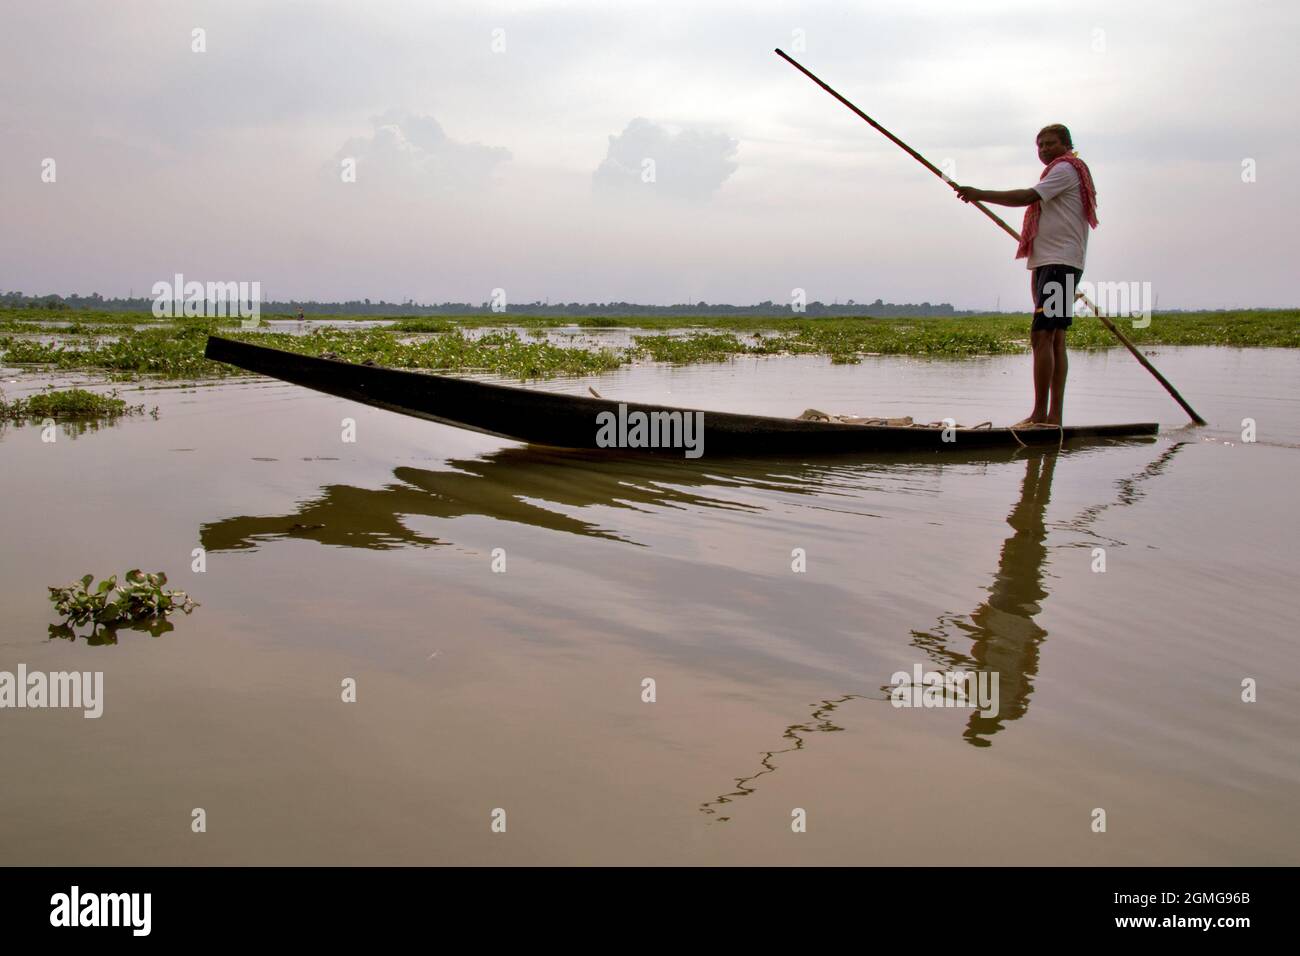 Photo du coucher de soleil dans le village rural Bengal où un boatman est vu conduire son bateau. Banque D'Images